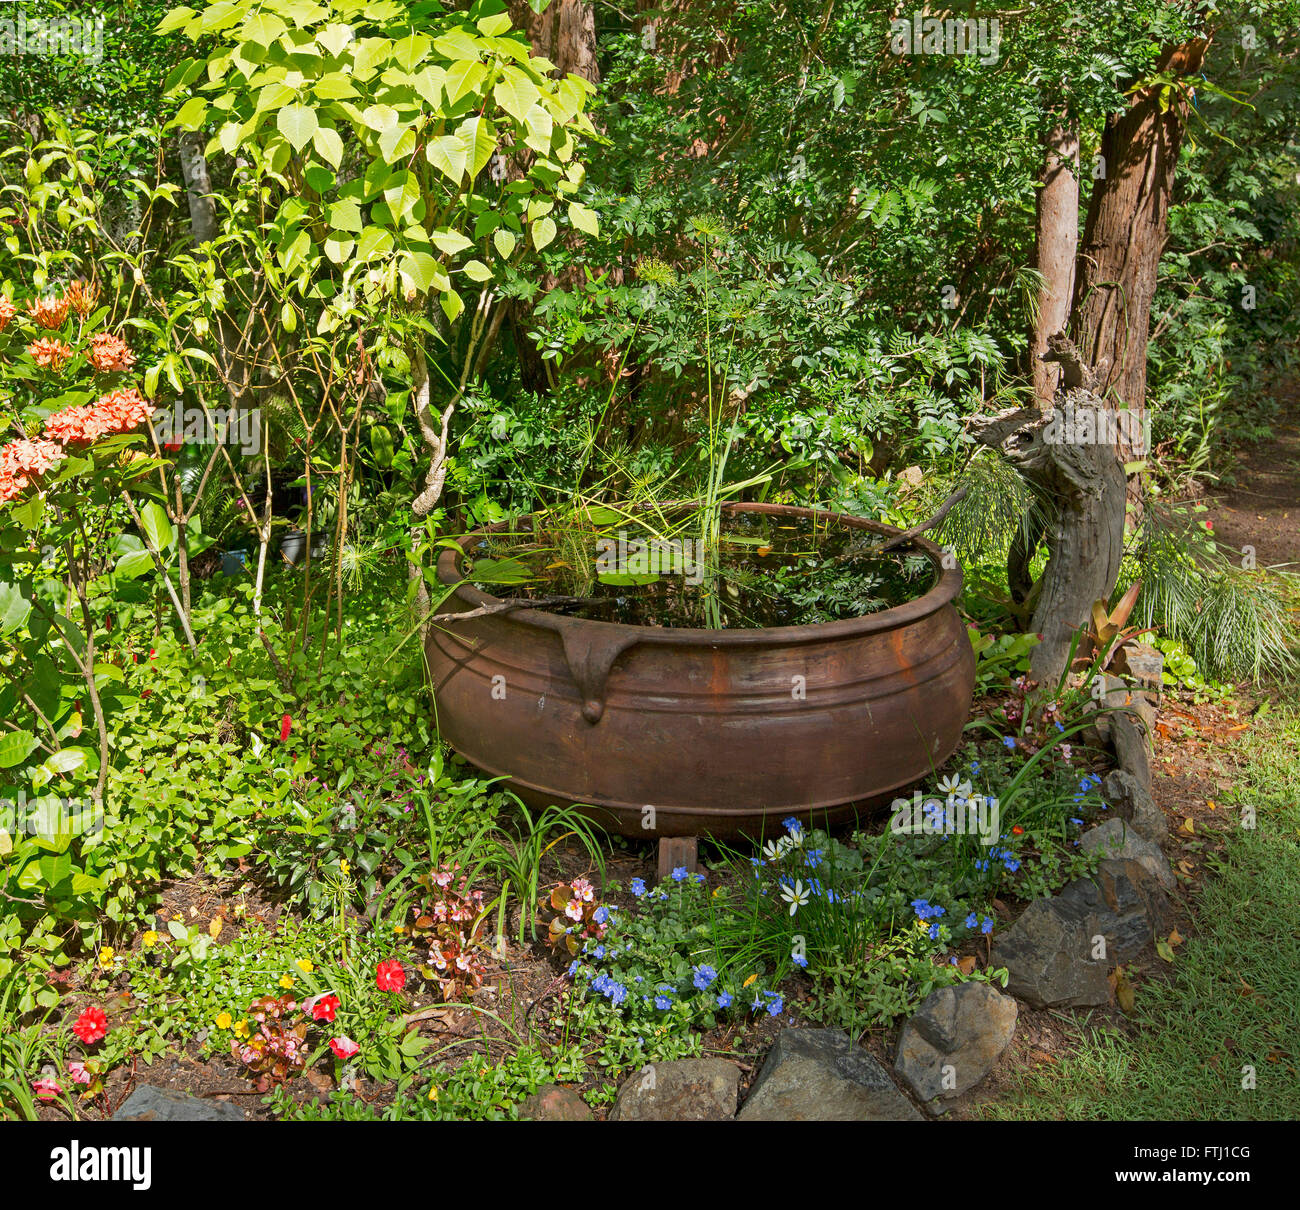 Jardin spectaculaire avec de gros chaudron rouillé caractéristique avec de  l'eau rouge, bleu, blanc fleurs et arbustes vert émeraude dense derrière  Photo Stock - Alamy